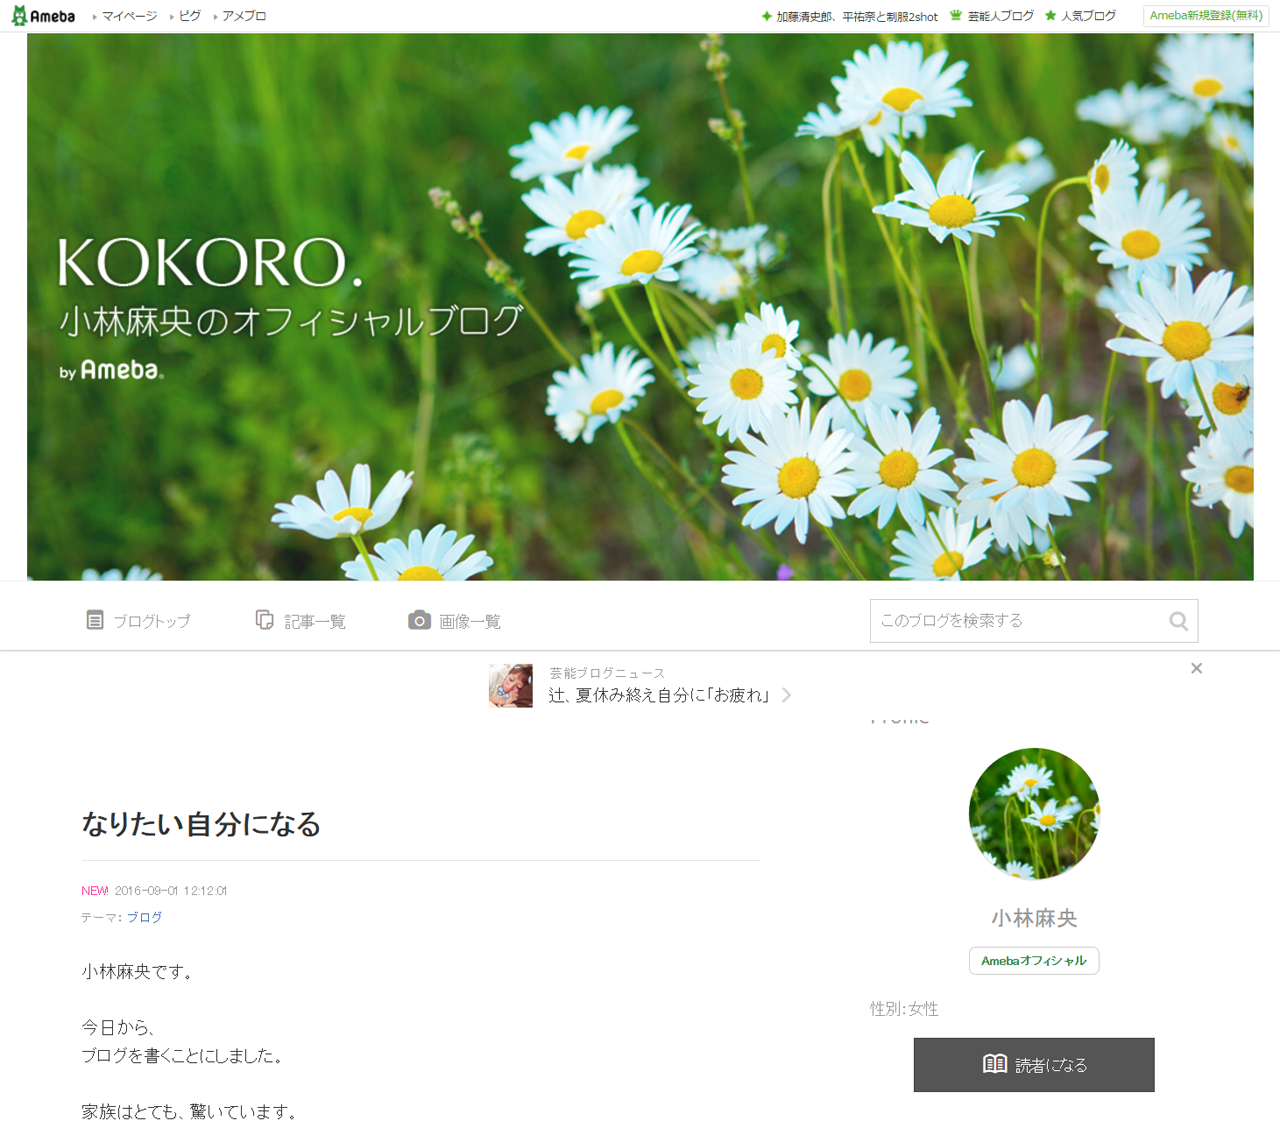 9月1日に新設された小林麻央さんのオフィシャルブログ「KOKORO.」